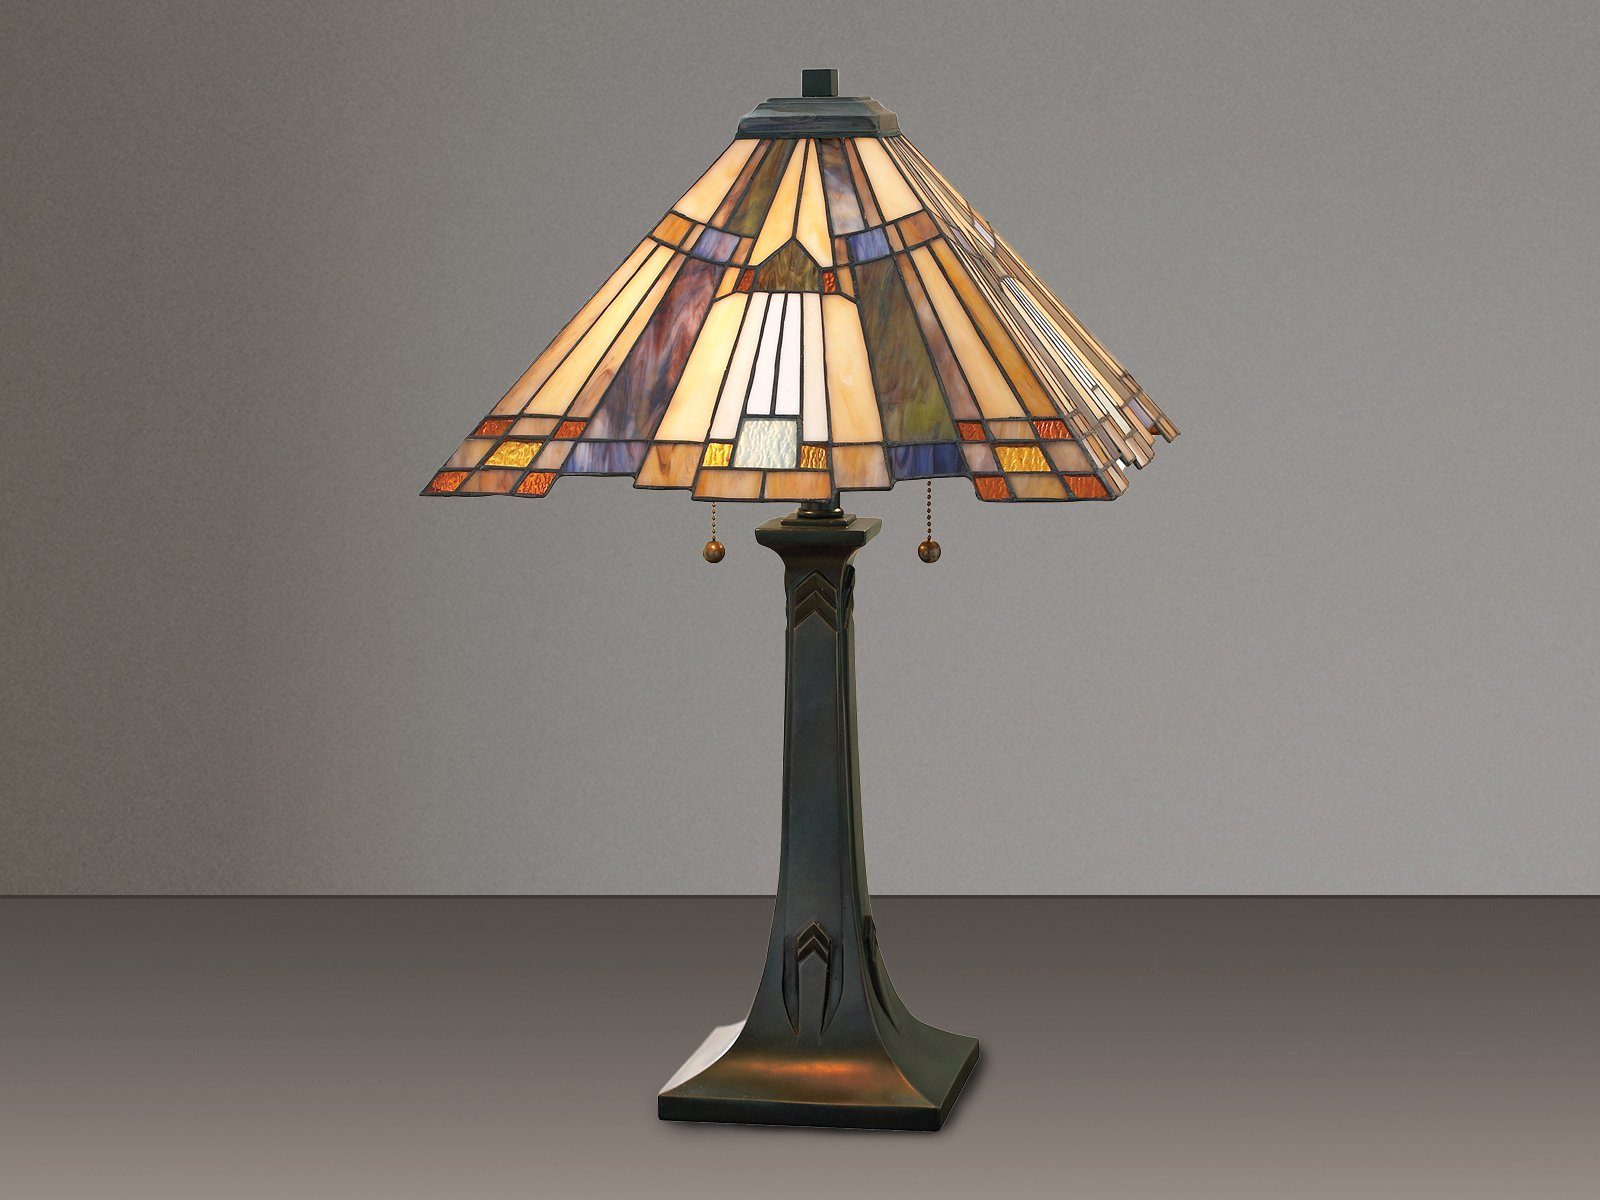 H Groß-e meineWunschleuchte wechselbar, Lampe LED schaltbar, Lichtquellen 63cm warmweiß, getrennt dimmbar Tischleuchte, Nachttisch-lampe LED Lampenschirm Glas Tiffany